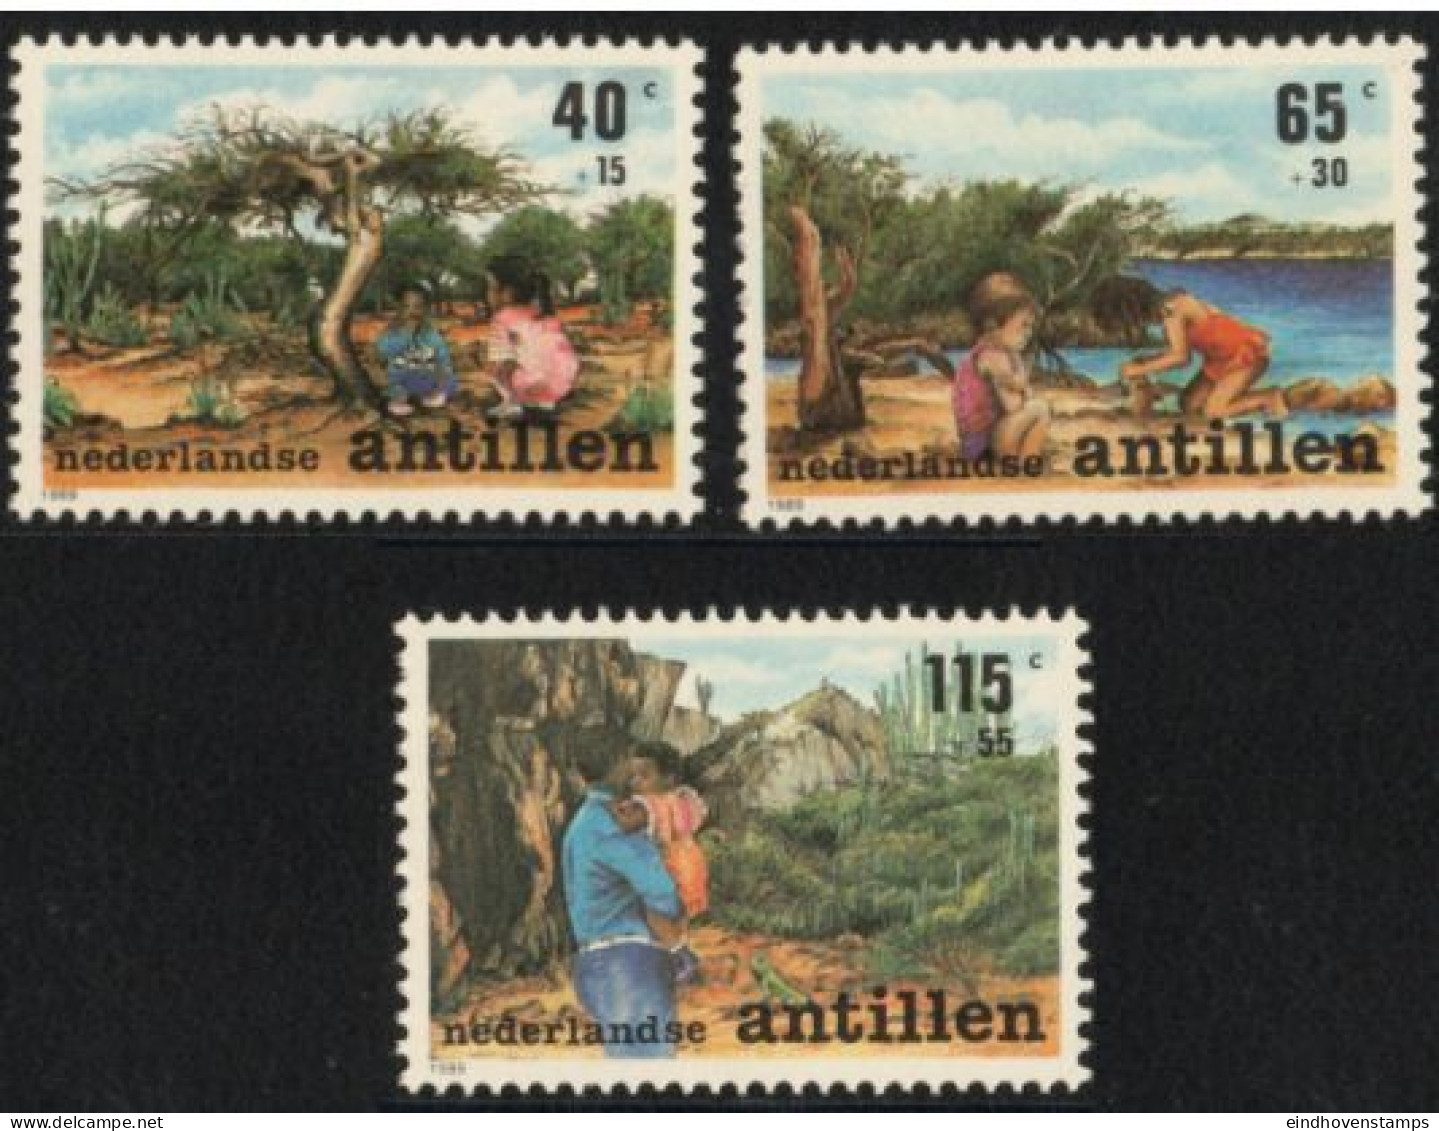 Dutch Antilles 1989 Child & Nature 3 Values MNH Nederlandse Antillen - Environment & Climate Protection